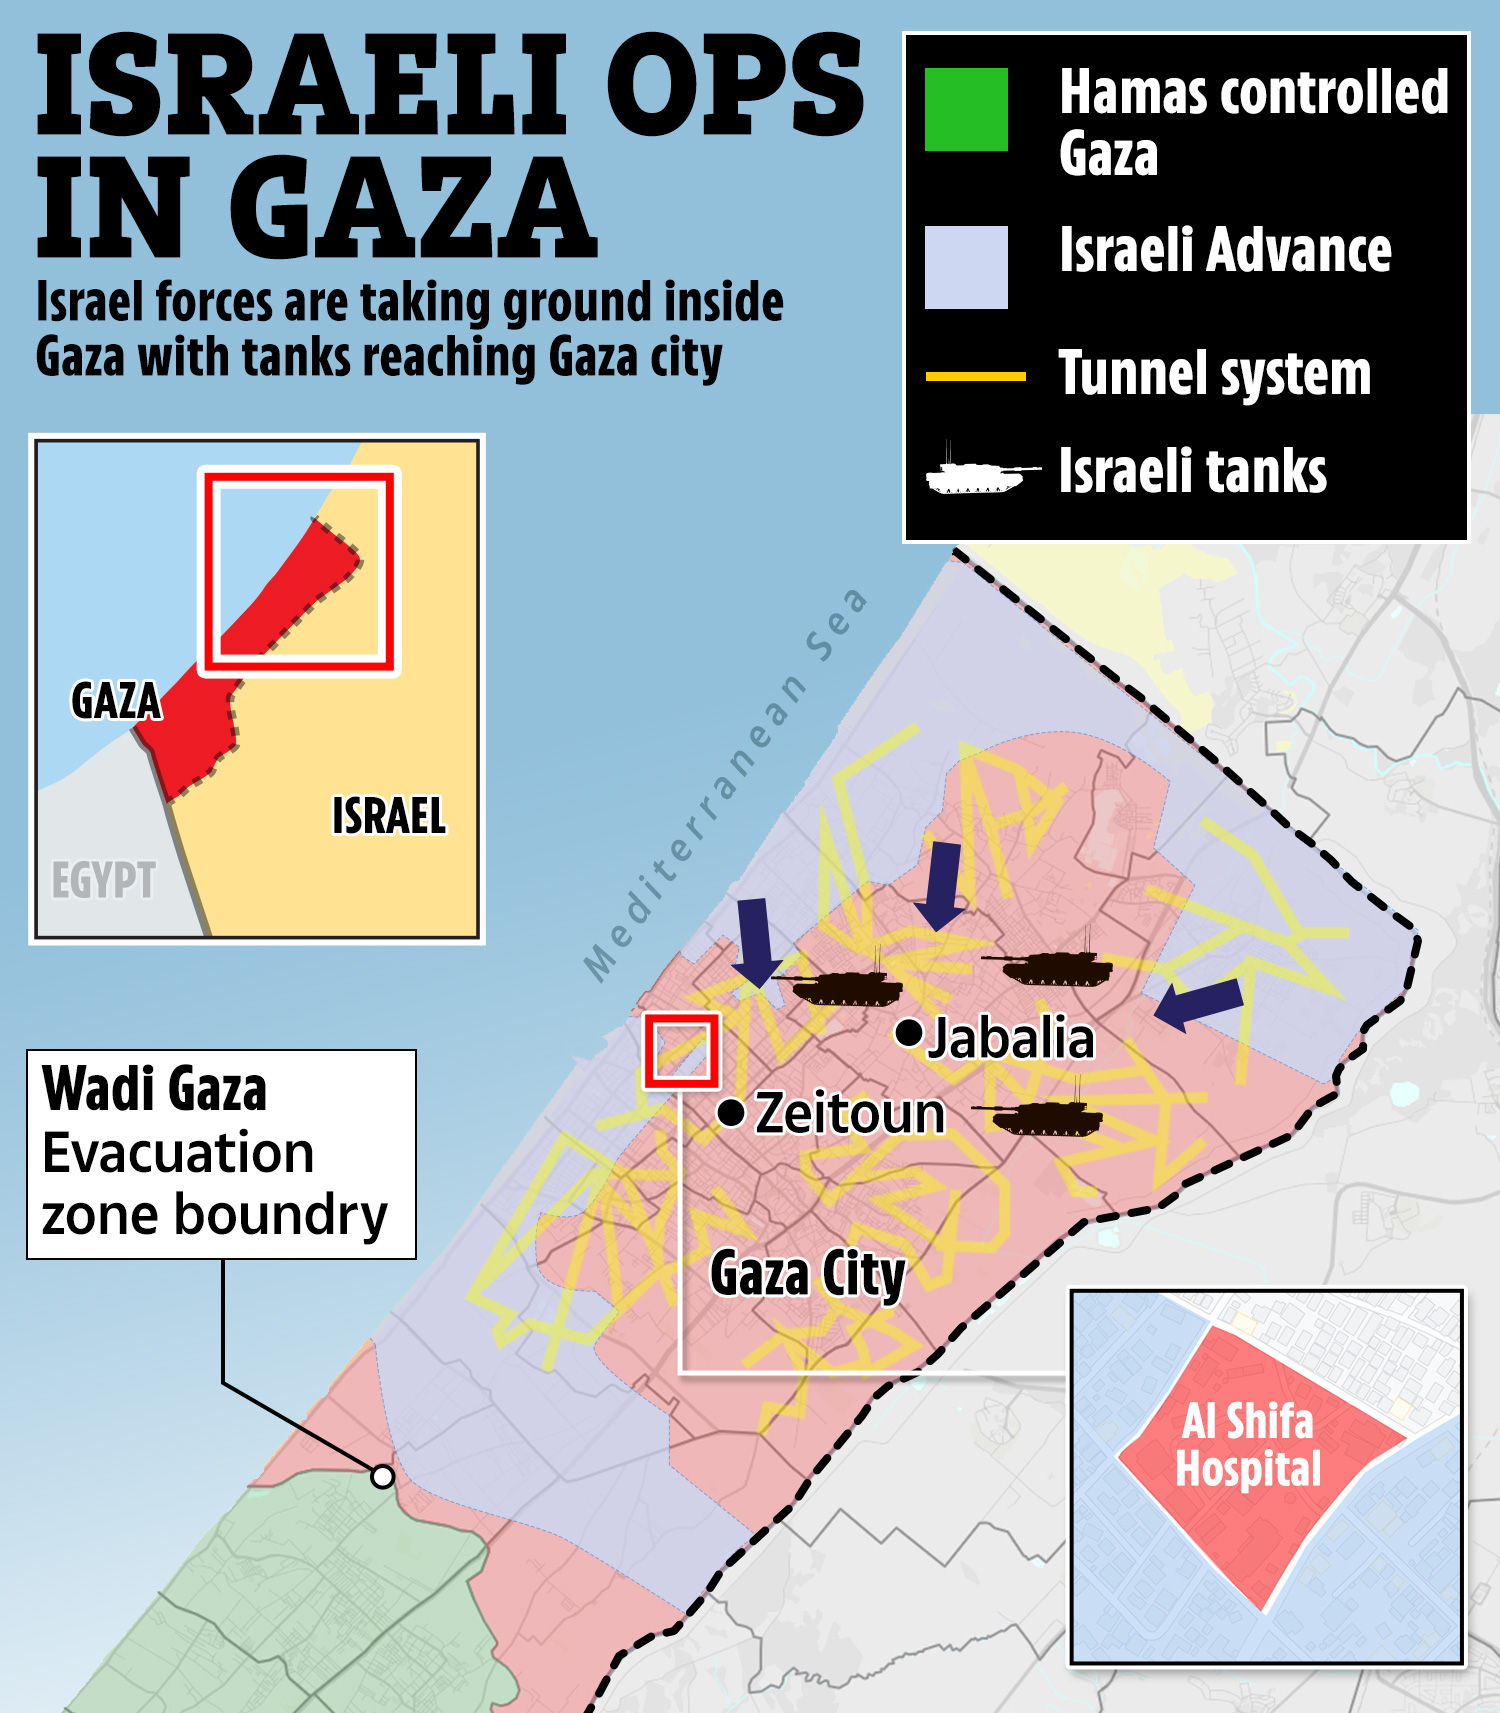 Karte zeigt, wie israelische Truppen nach Zeitoun und Jabalia vordringen